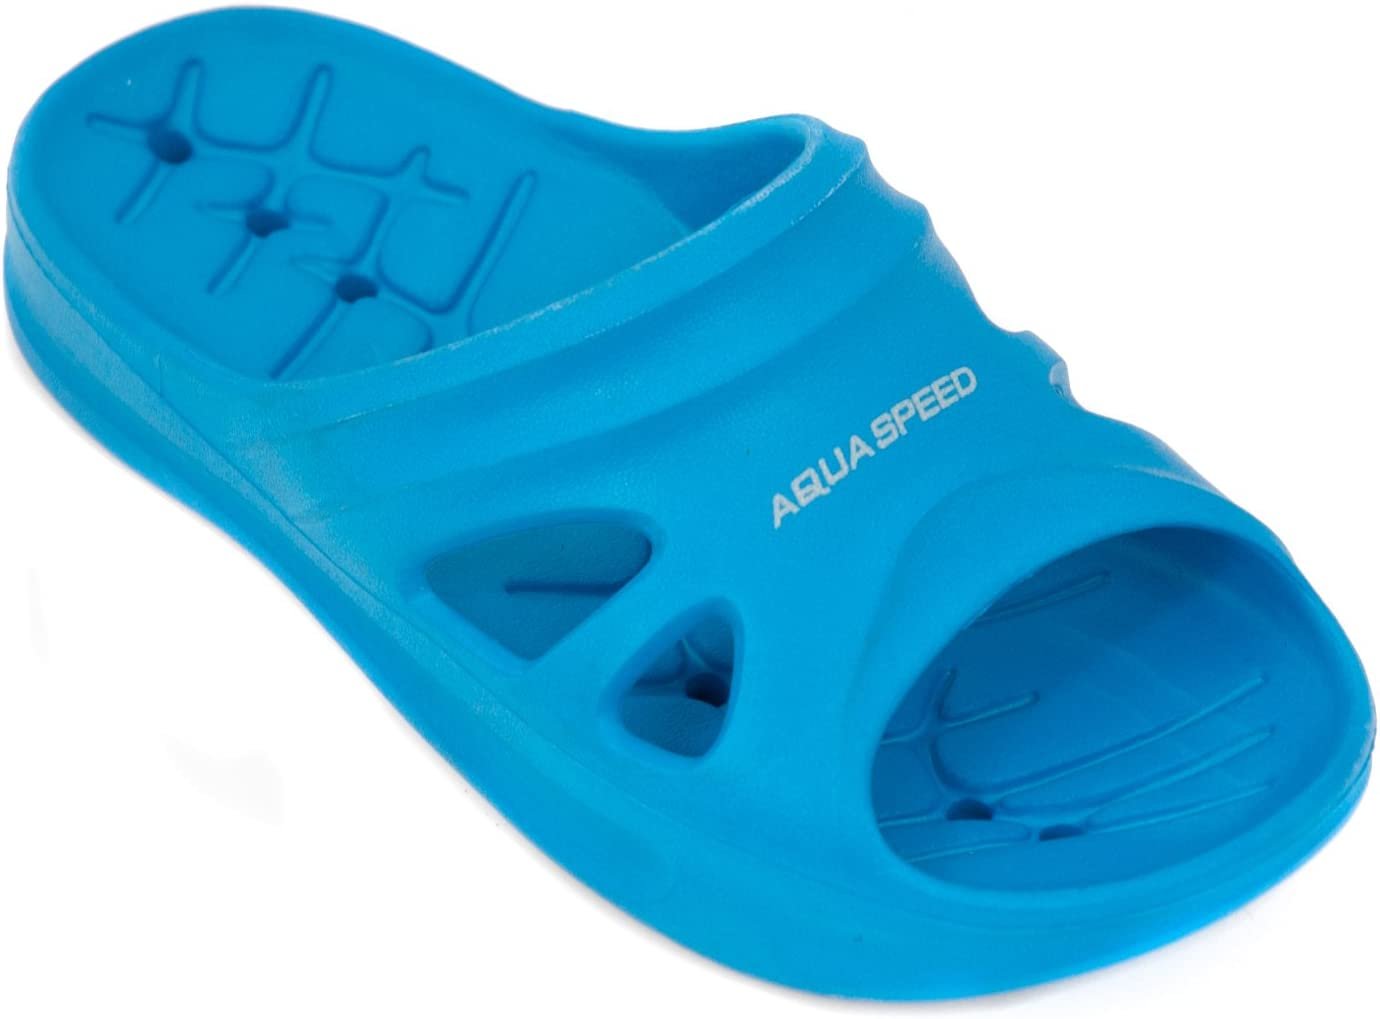 Обувь для бассейна. Шлепанцы для бассейна мужские сине-бирюзовые Clog 500 NABAIJI. Шлепанцы детские для бассейна. Резиновые шлепки для детей. Тапкидлябасе ина.